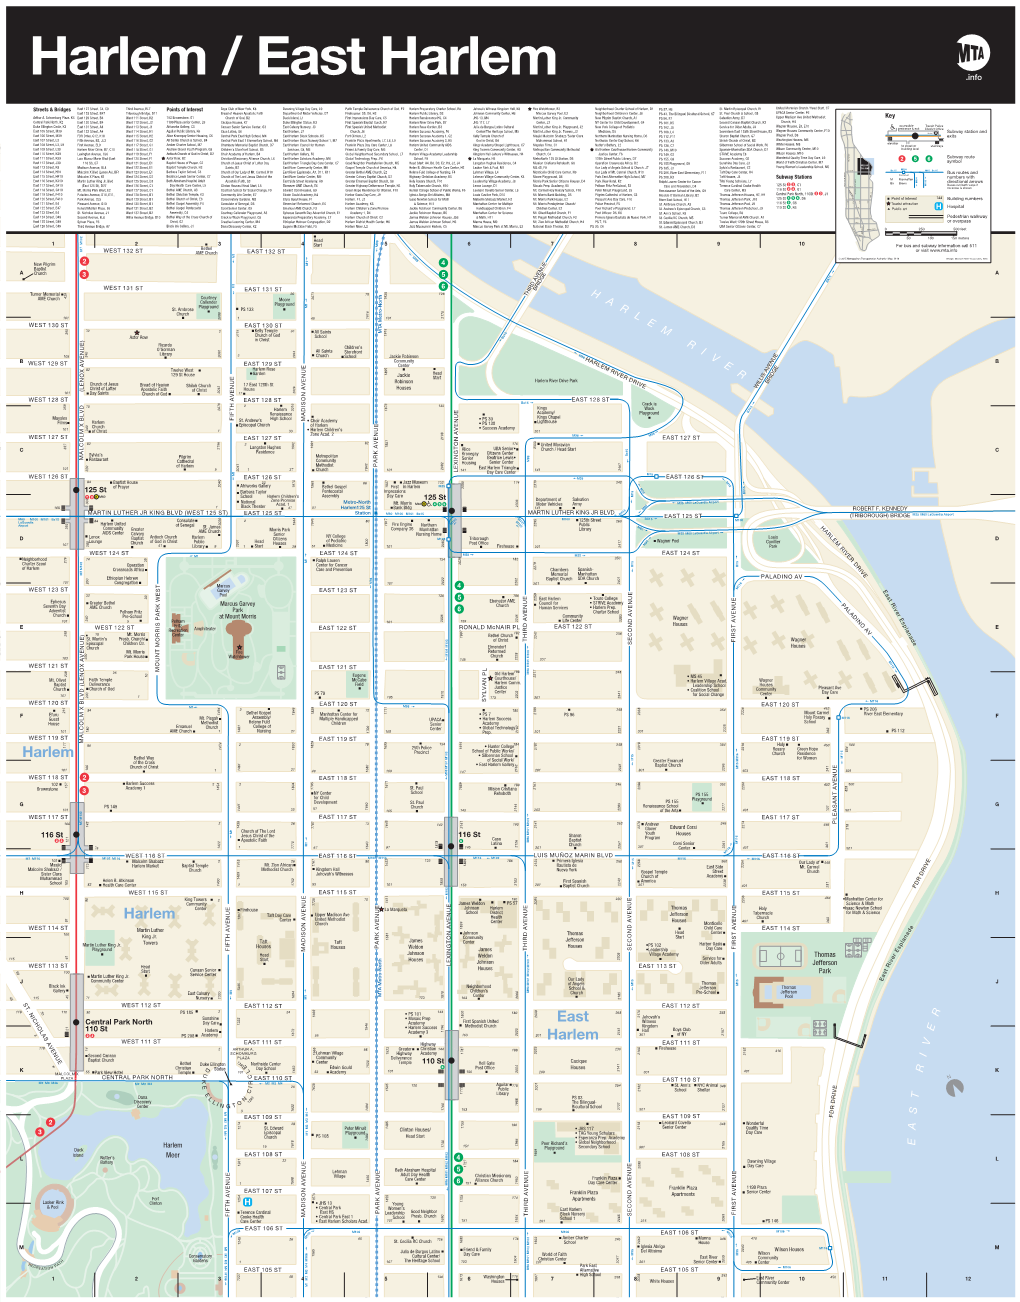 MTA Neighborhood Maps: Harlem/East Harlem